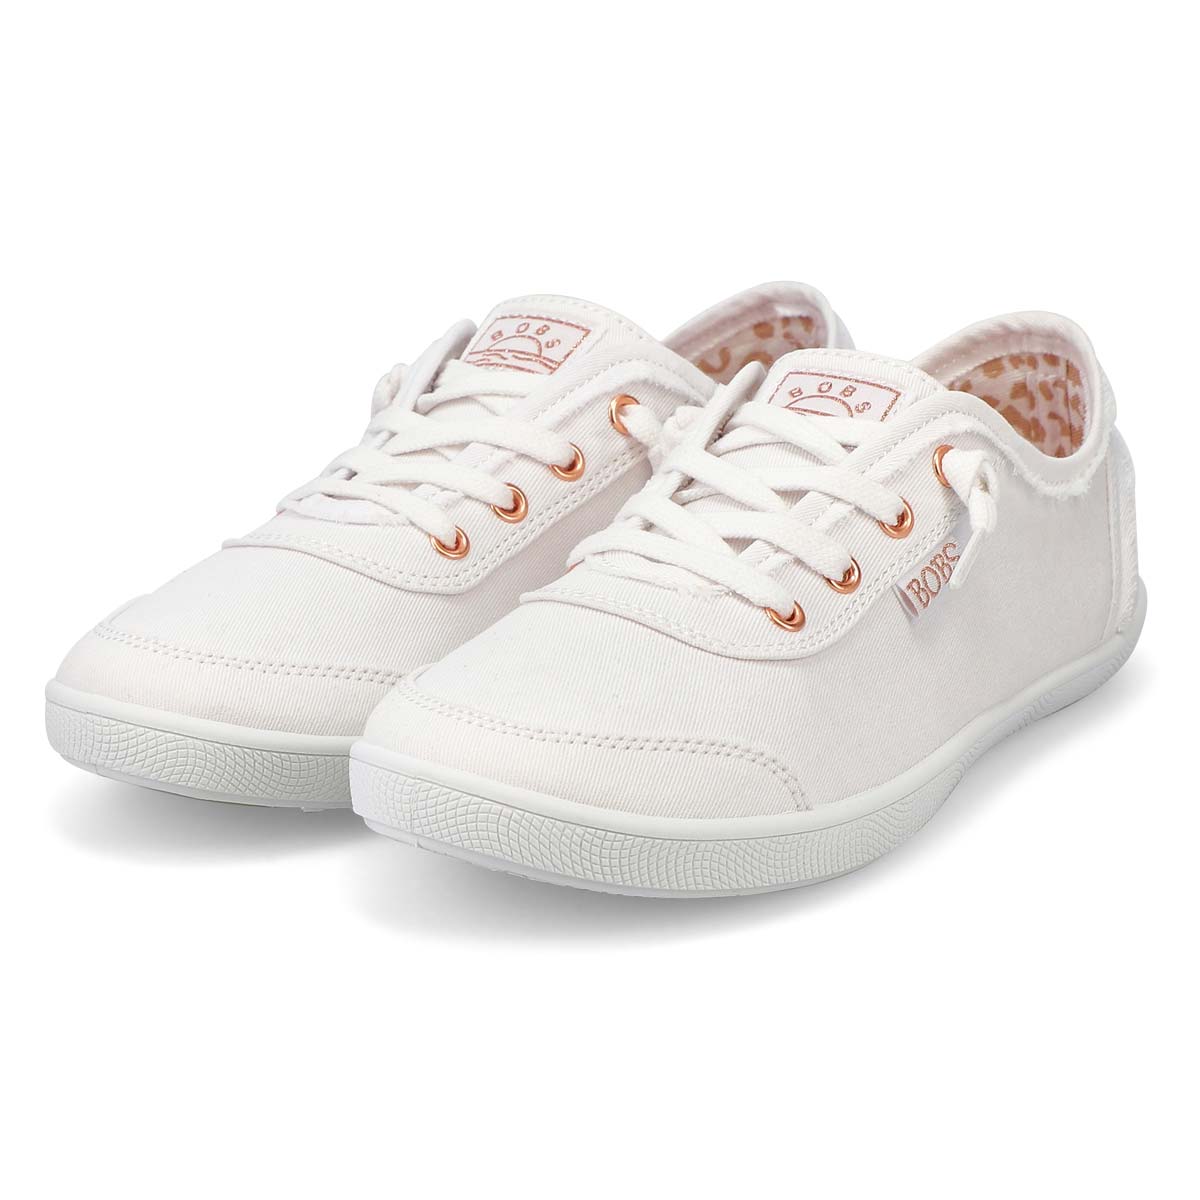 Womens' Bobs B Cute Sneaker - White